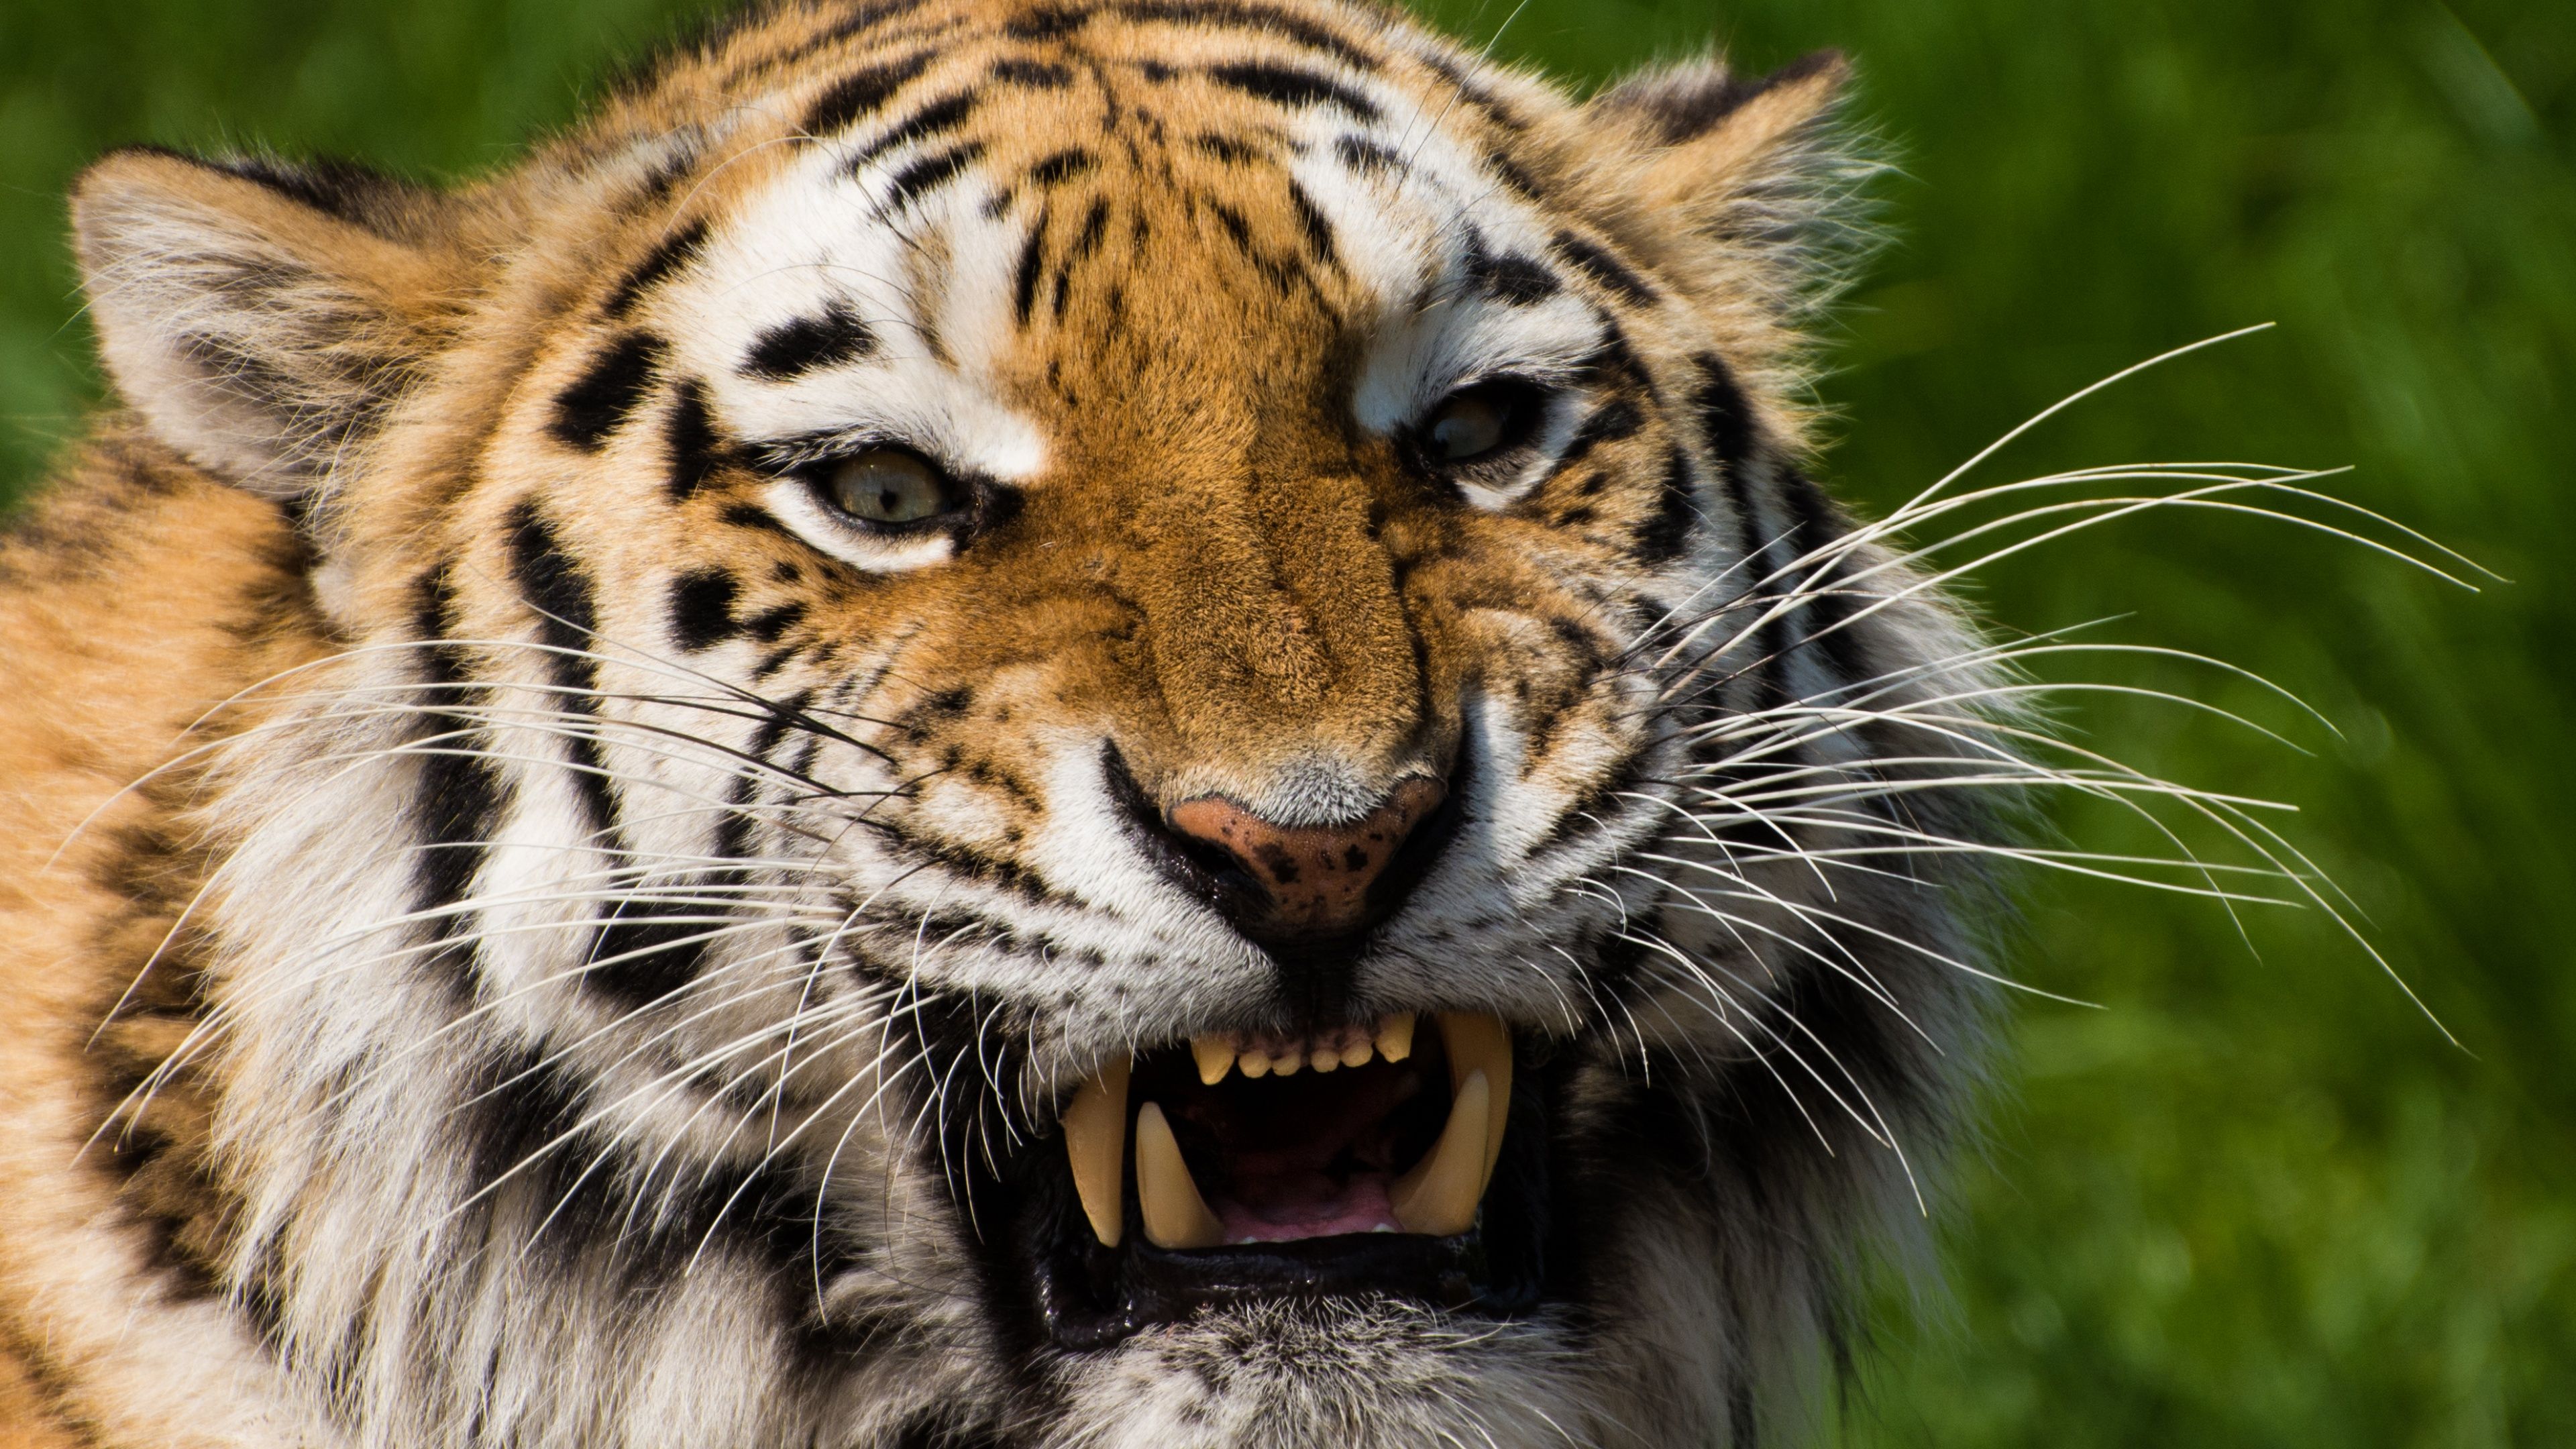 Tiger face Wallpaper 4K, Closeup, Big cat, Animals